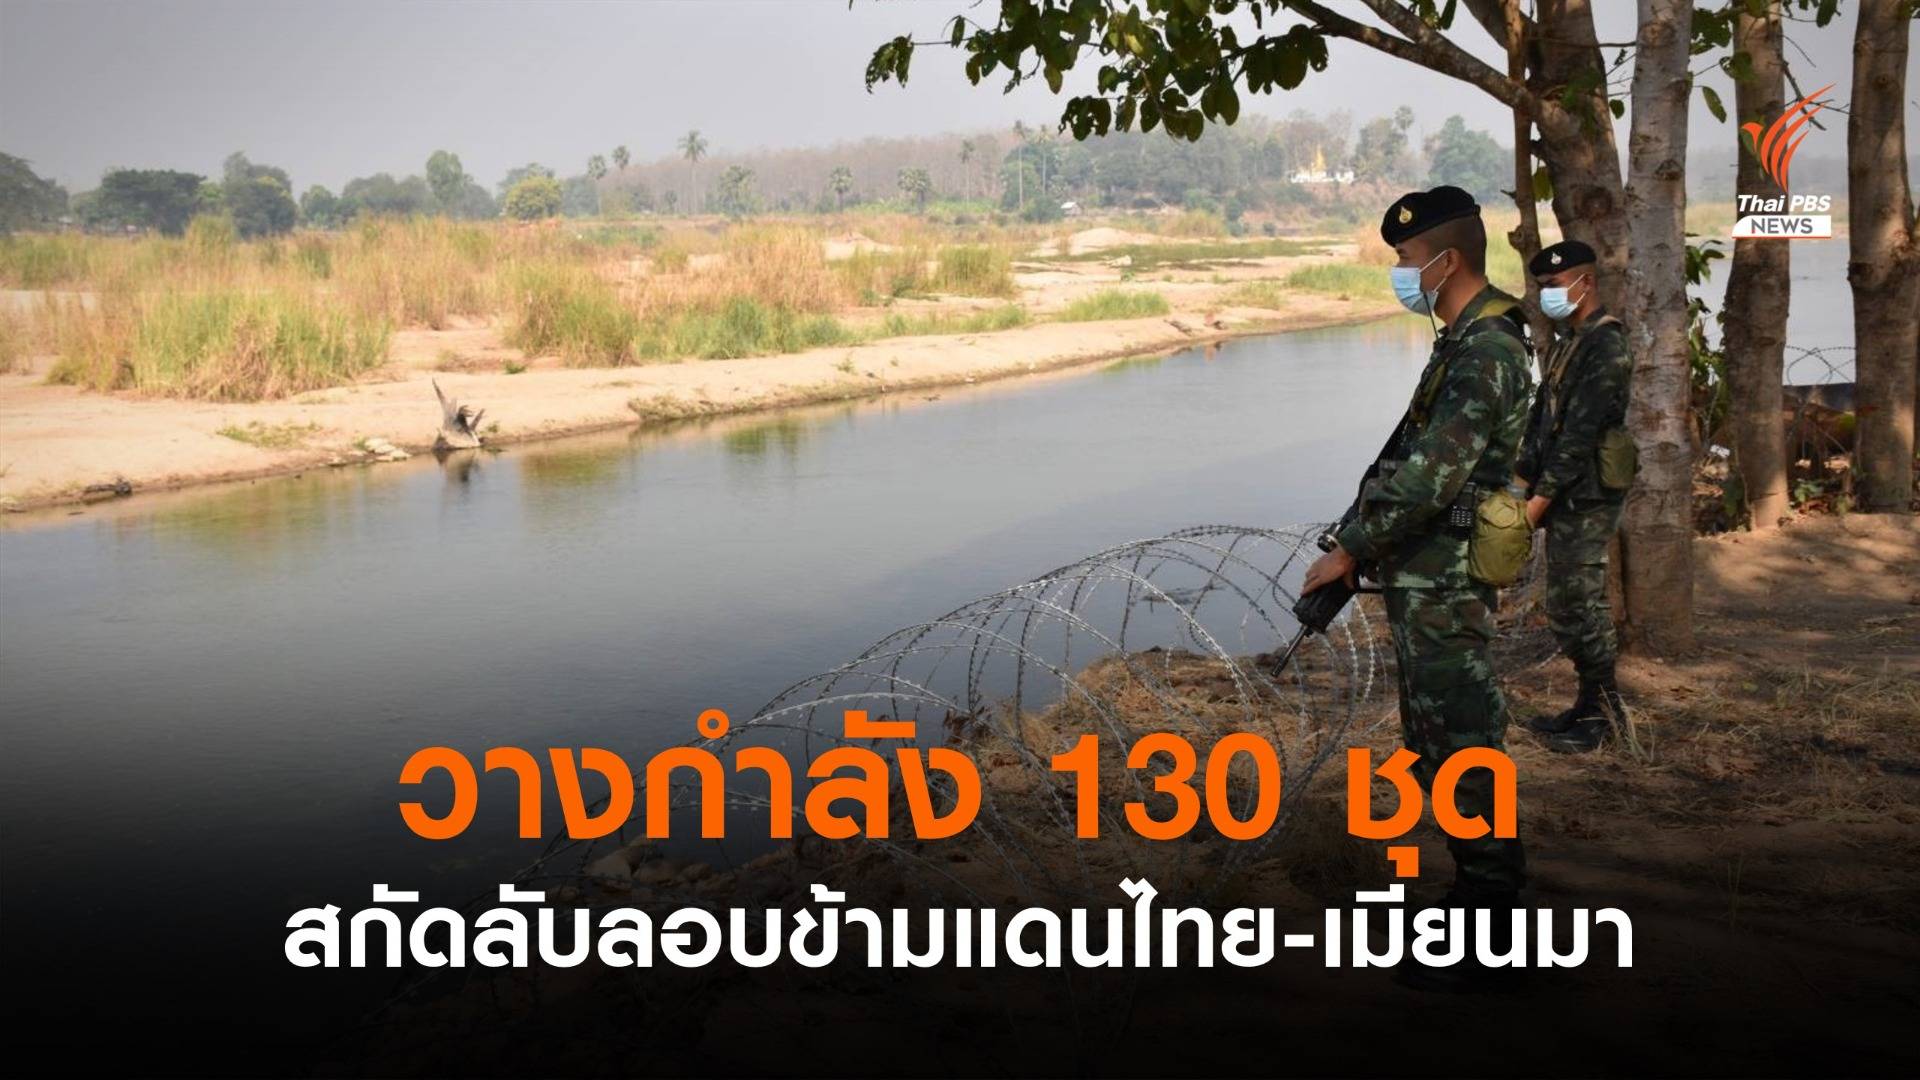 กองกำลังผาเมืองวางกำลัง 130 ชุด สกัดลักลอบข้ามแดนไทย-เมียนมา  